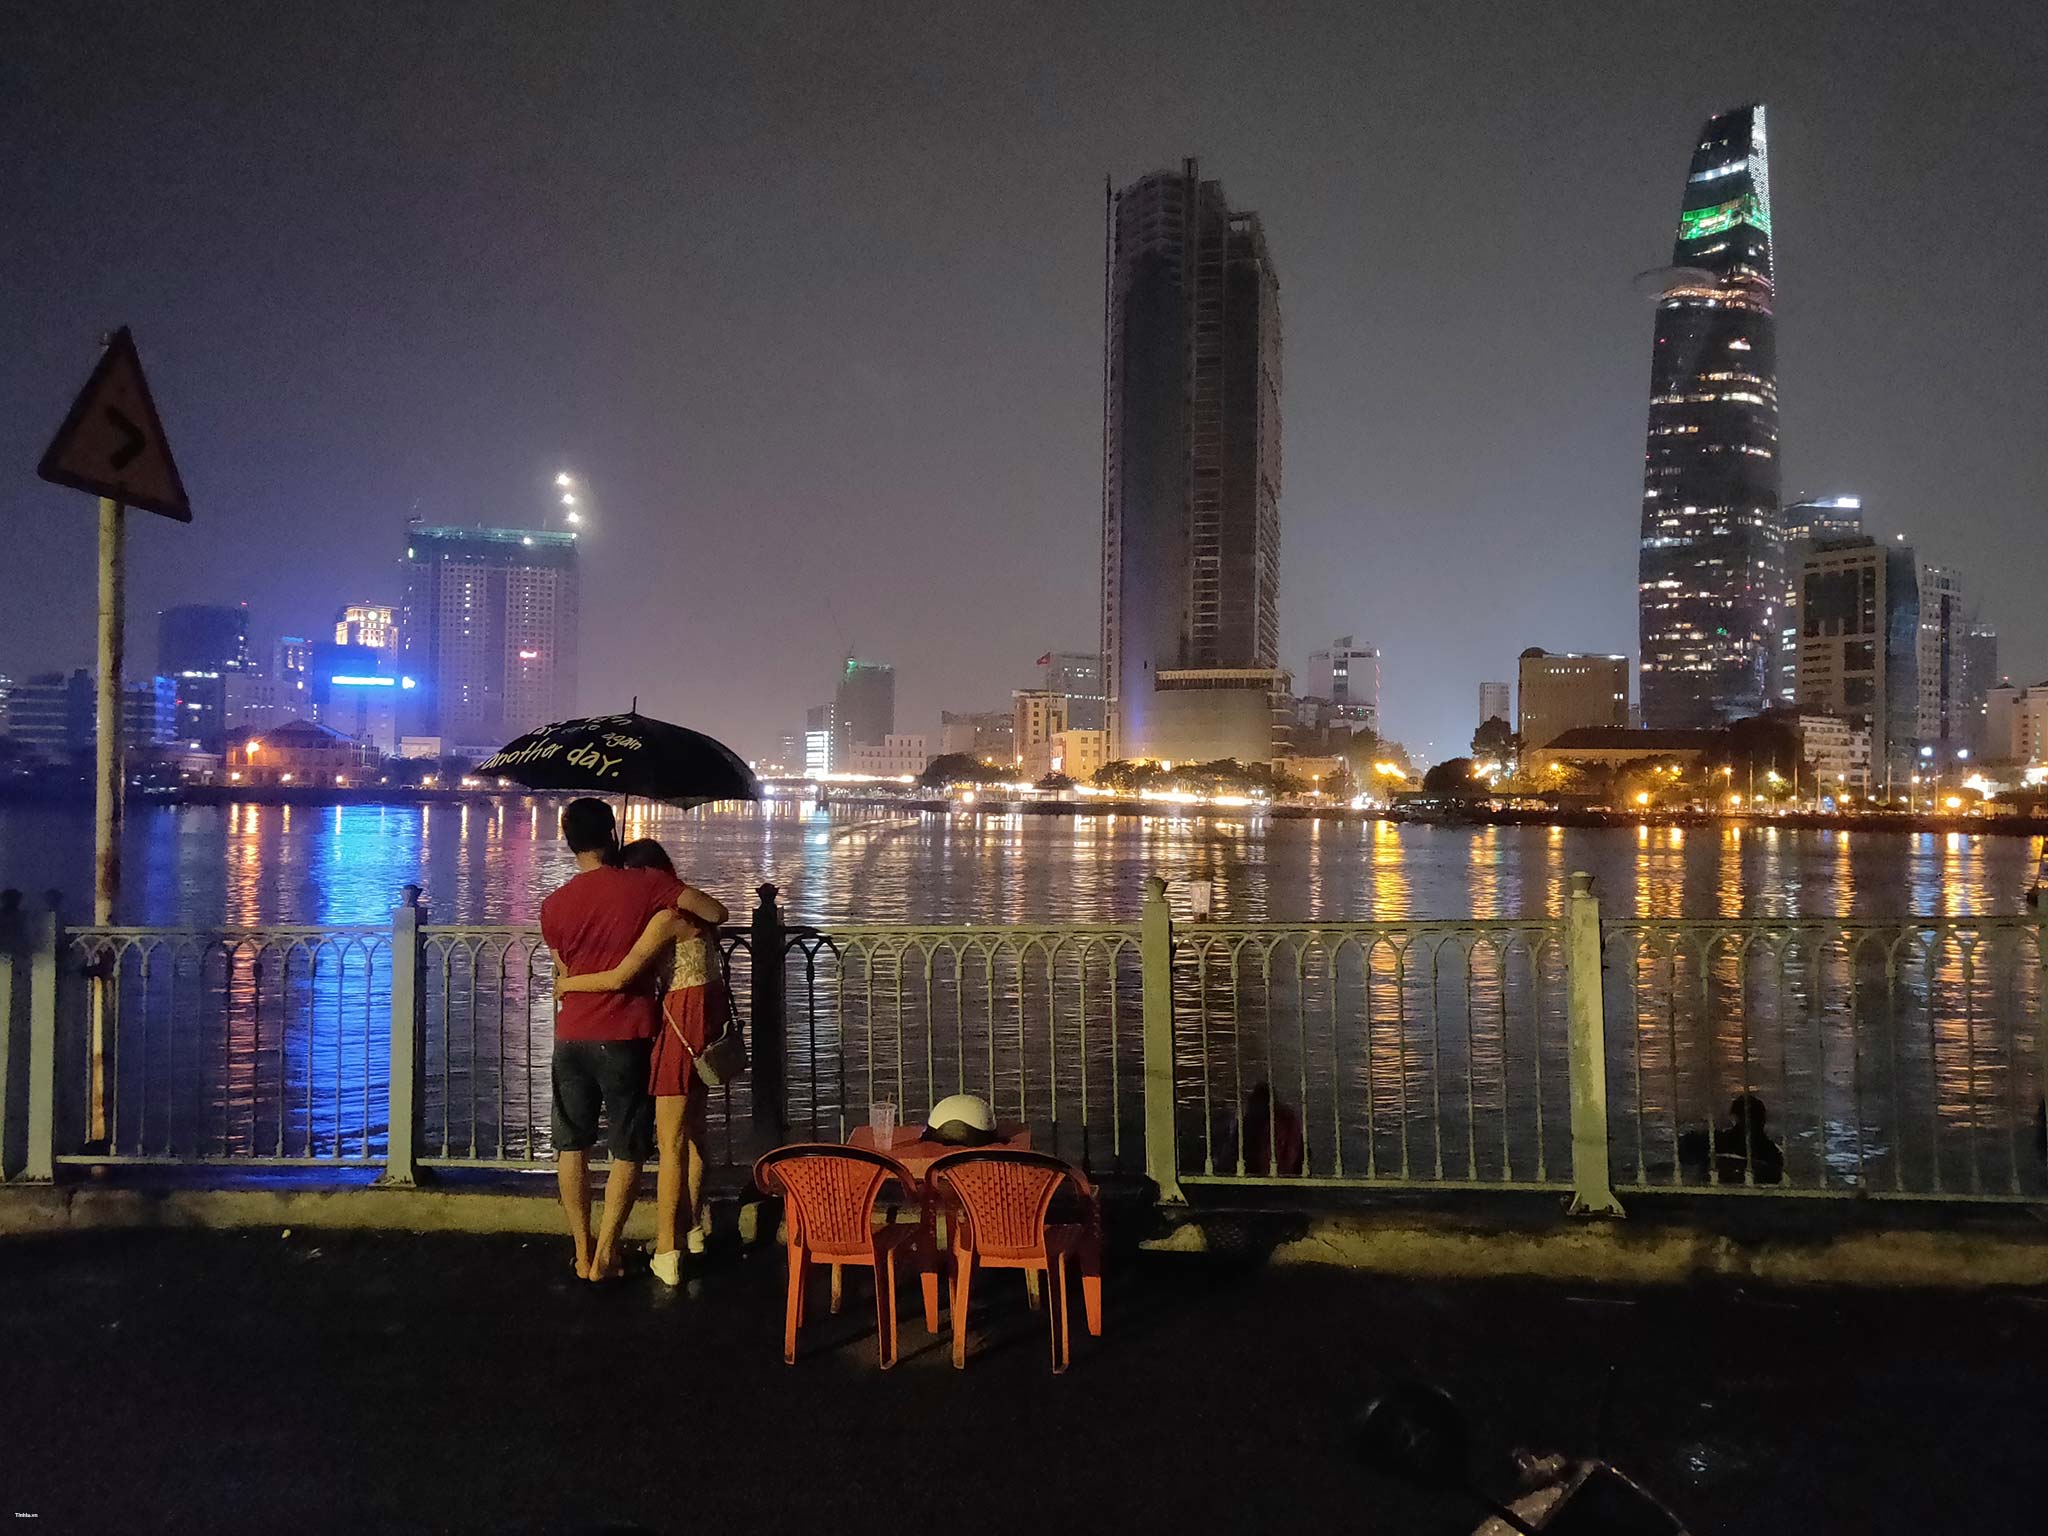 Oppo FindX đường phố Sài Gòn về đêm mang đến cho bạn những hình ảnh độc đáo và chân thực nhất. Hãy để chiếc điện thoại thông minh của bạn ghi lại các khoảnh khắc đẹp và ấn tượng của thành phố này. Xem ngay hình ảnh để đón nhận sự mới mẻ từ Oppo FindX.